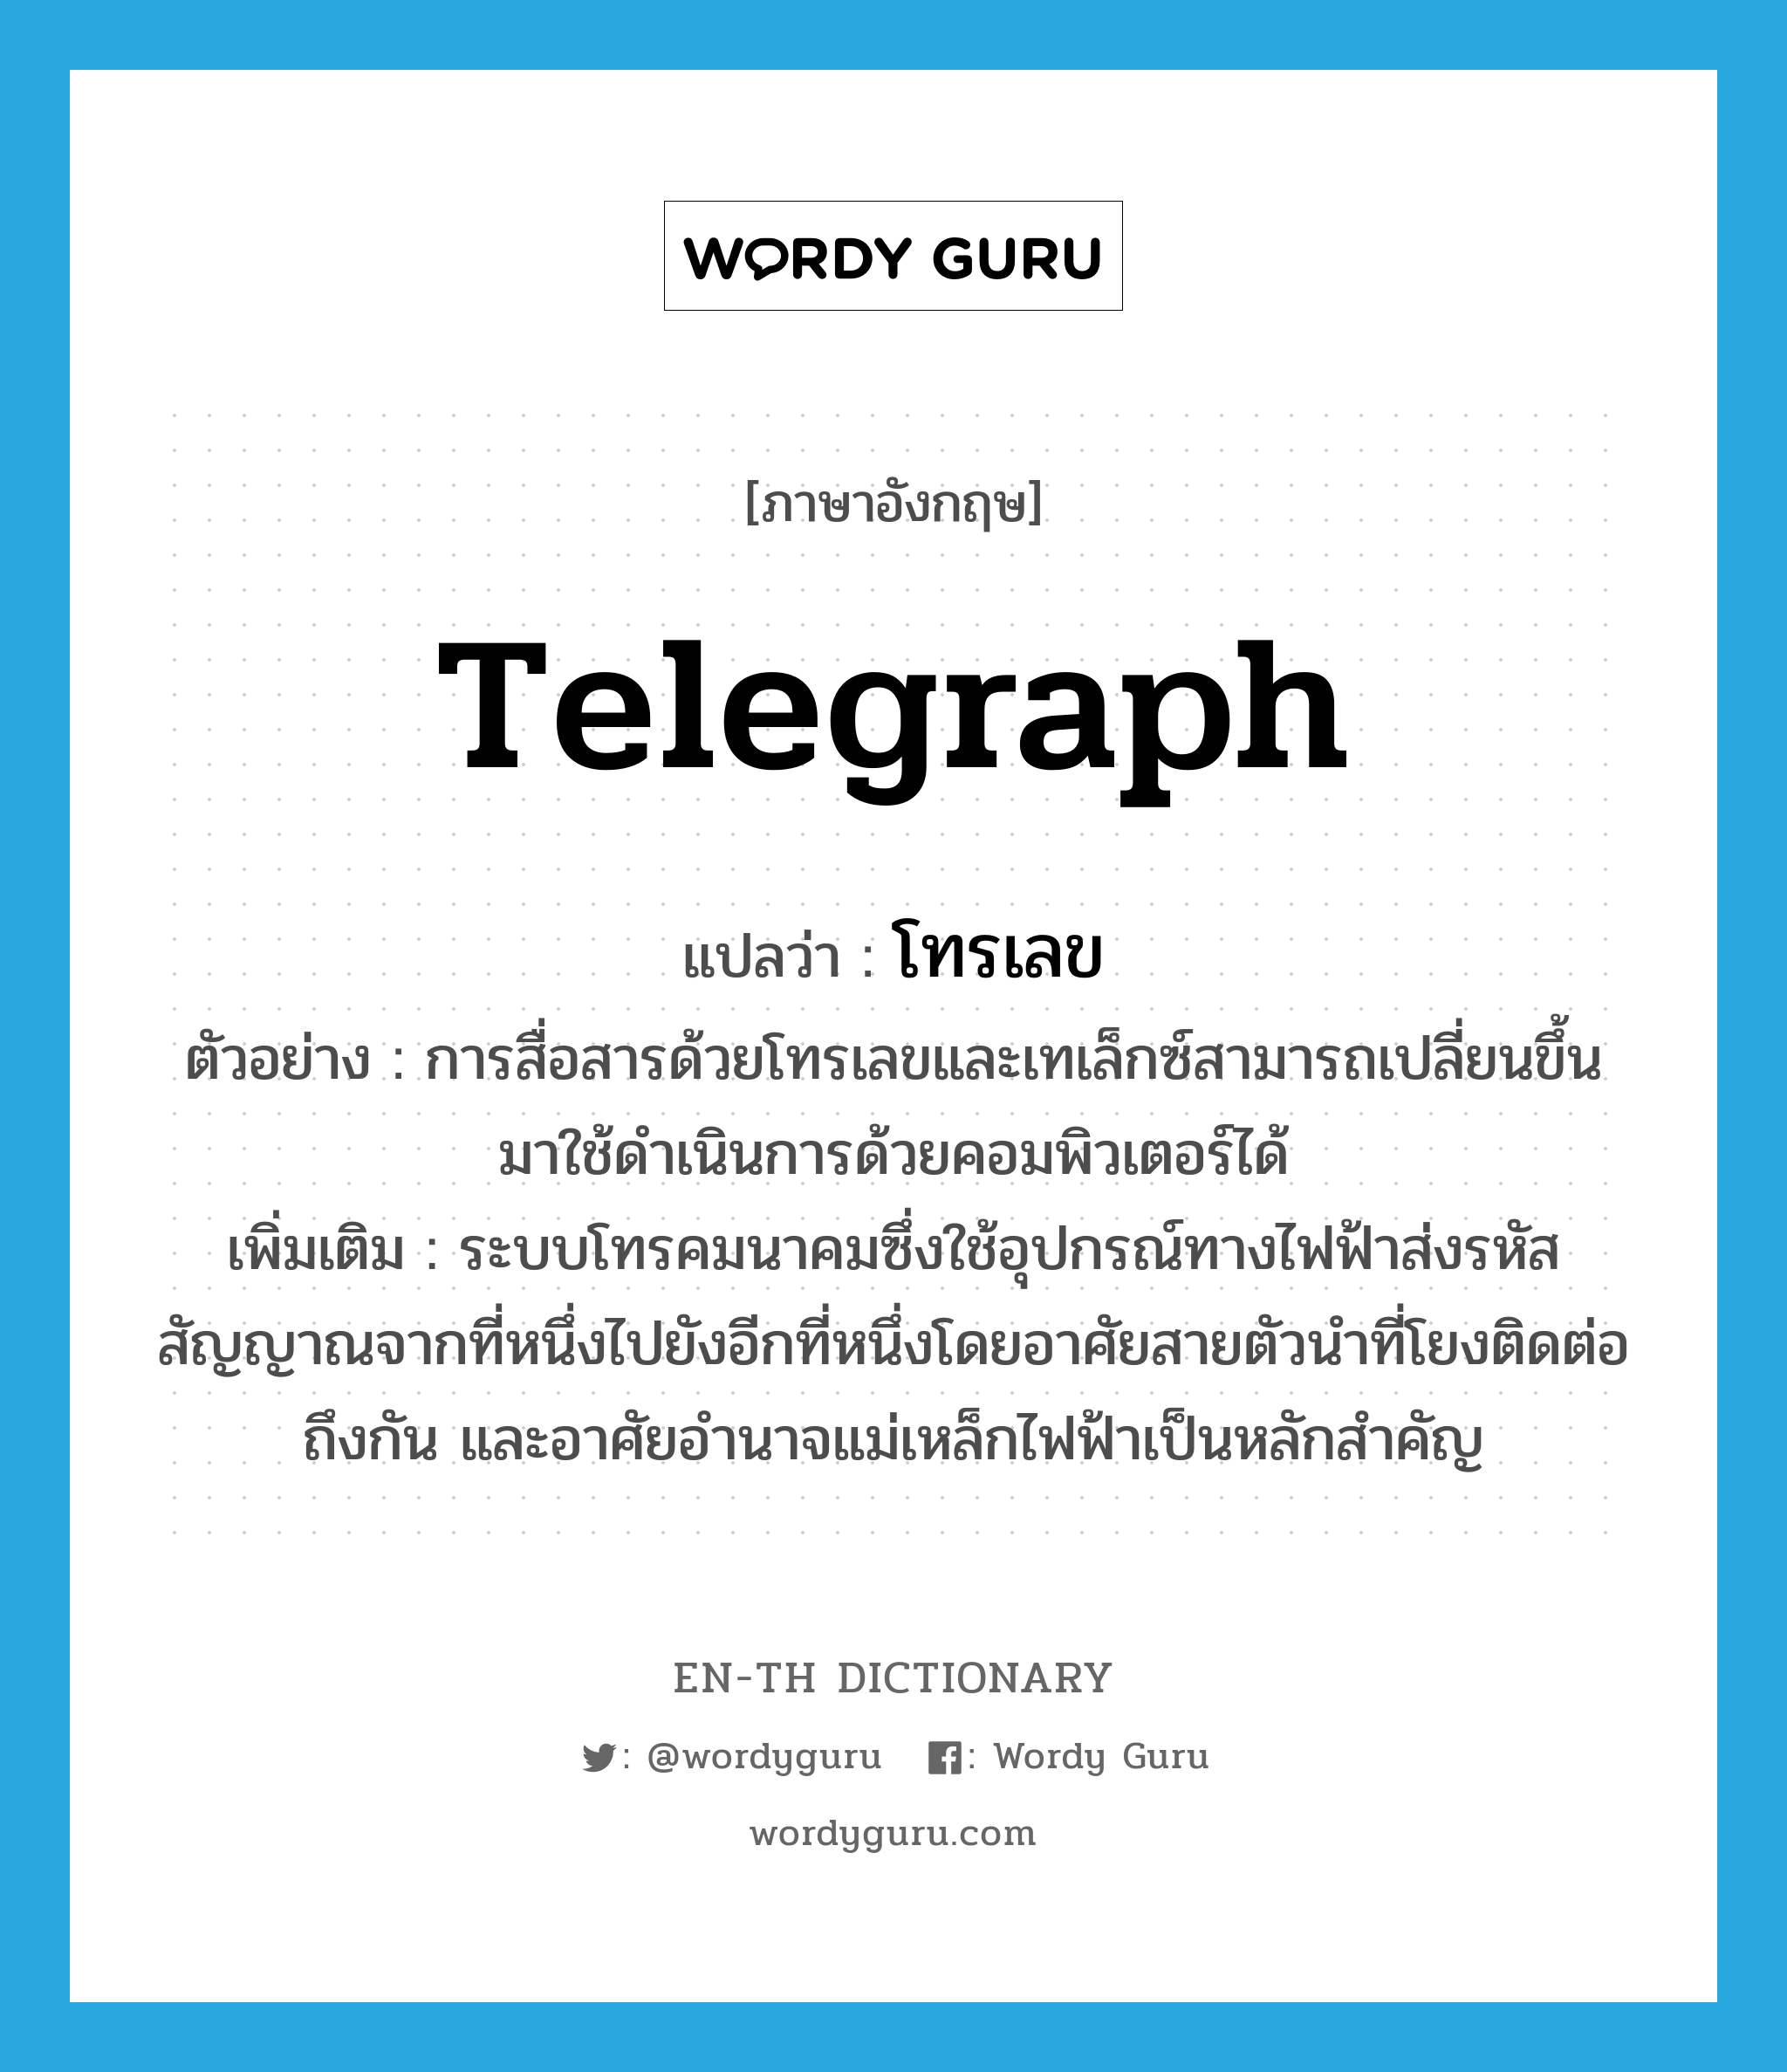 telegraph แปลว่า?, คำศัพท์ภาษาอังกฤษ telegraph แปลว่า โทรเลข ประเภท N ตัวอย่าง การสื่อสารด้วยโทรเลขและเทเล็กซ์สามารถเปลี่ยนขึ้นมาใช้ดำเนินการด้วยคอมพิวเตอร์ได้ เพิ่มเติม ระบบโทรคมนาคมซึ่งใช้อุปกรณ์ทางไฟฟ้าส่งรหัสสัญญาณจากที่หนึ่งไปยังอีกที่หนึ่งโดยอาศัยสายตัวนำที่โยงติดต่อถึงกัน และอาศัยอำนาจแม่เหล็กไฟฟ้าเป็นหลักสำคัญ หมวด N